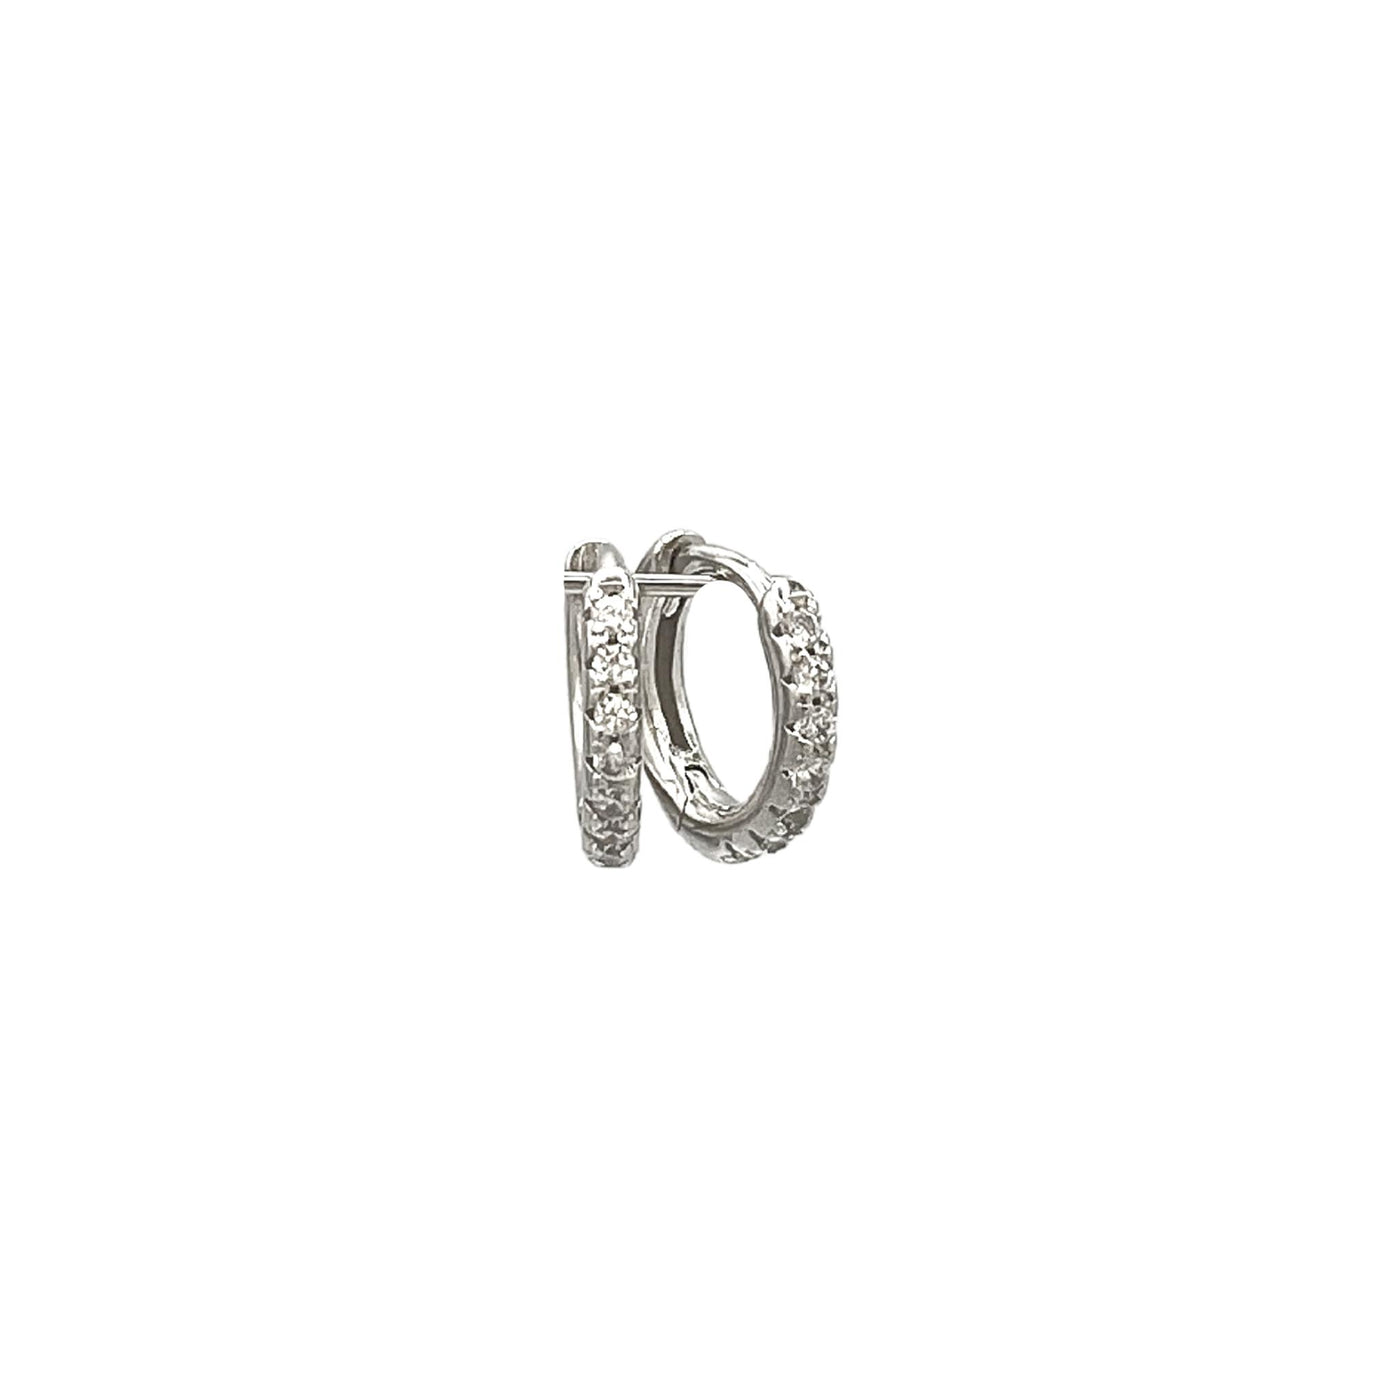 Silver hoop earrings with stones - rhodium - 10 mm